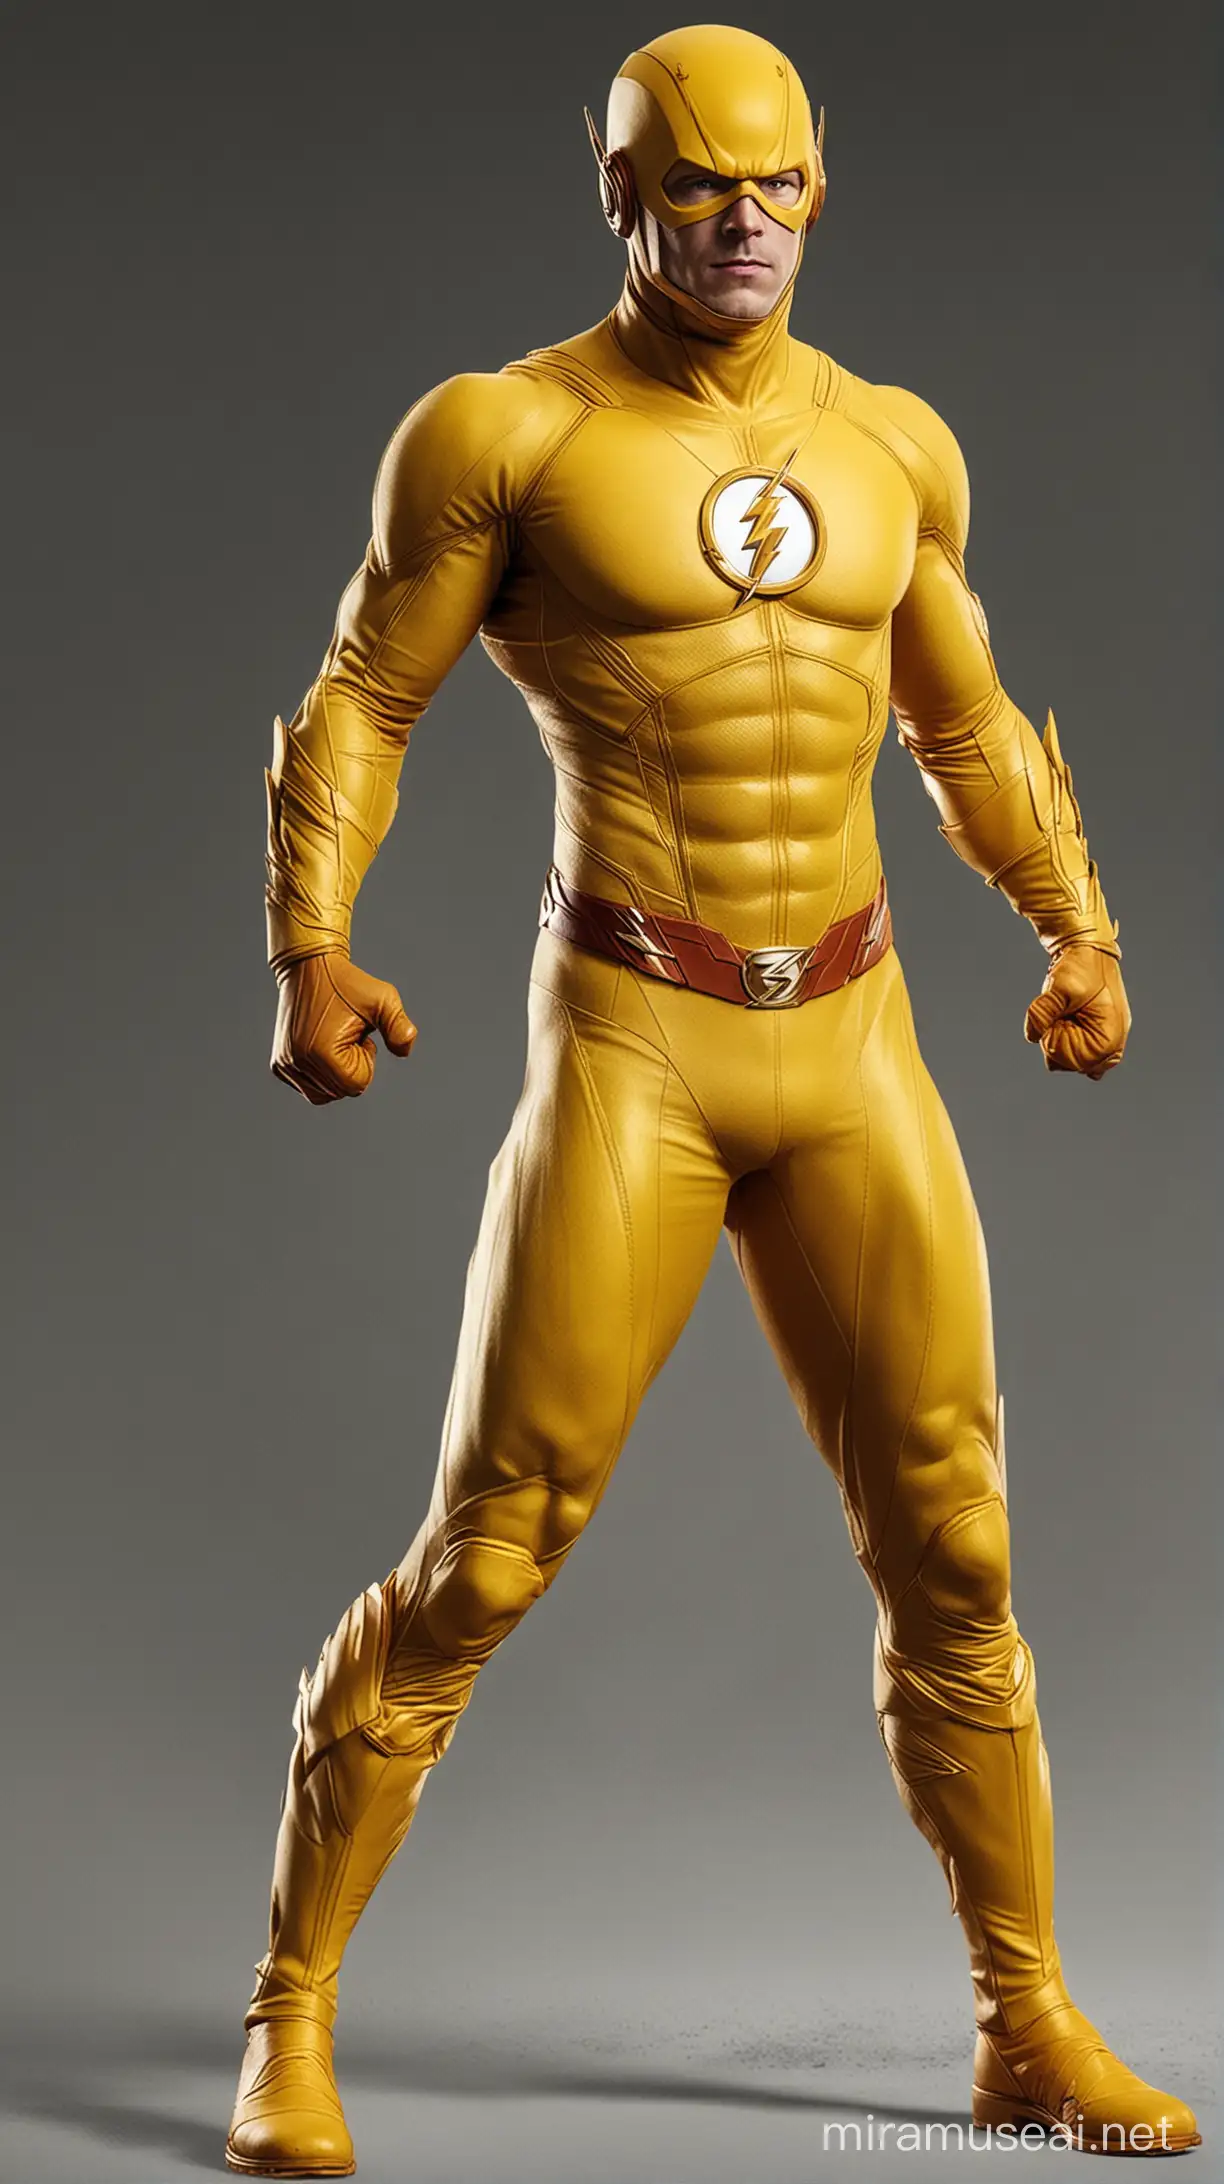 Personaggio the flash con costume giallo a corpo intero